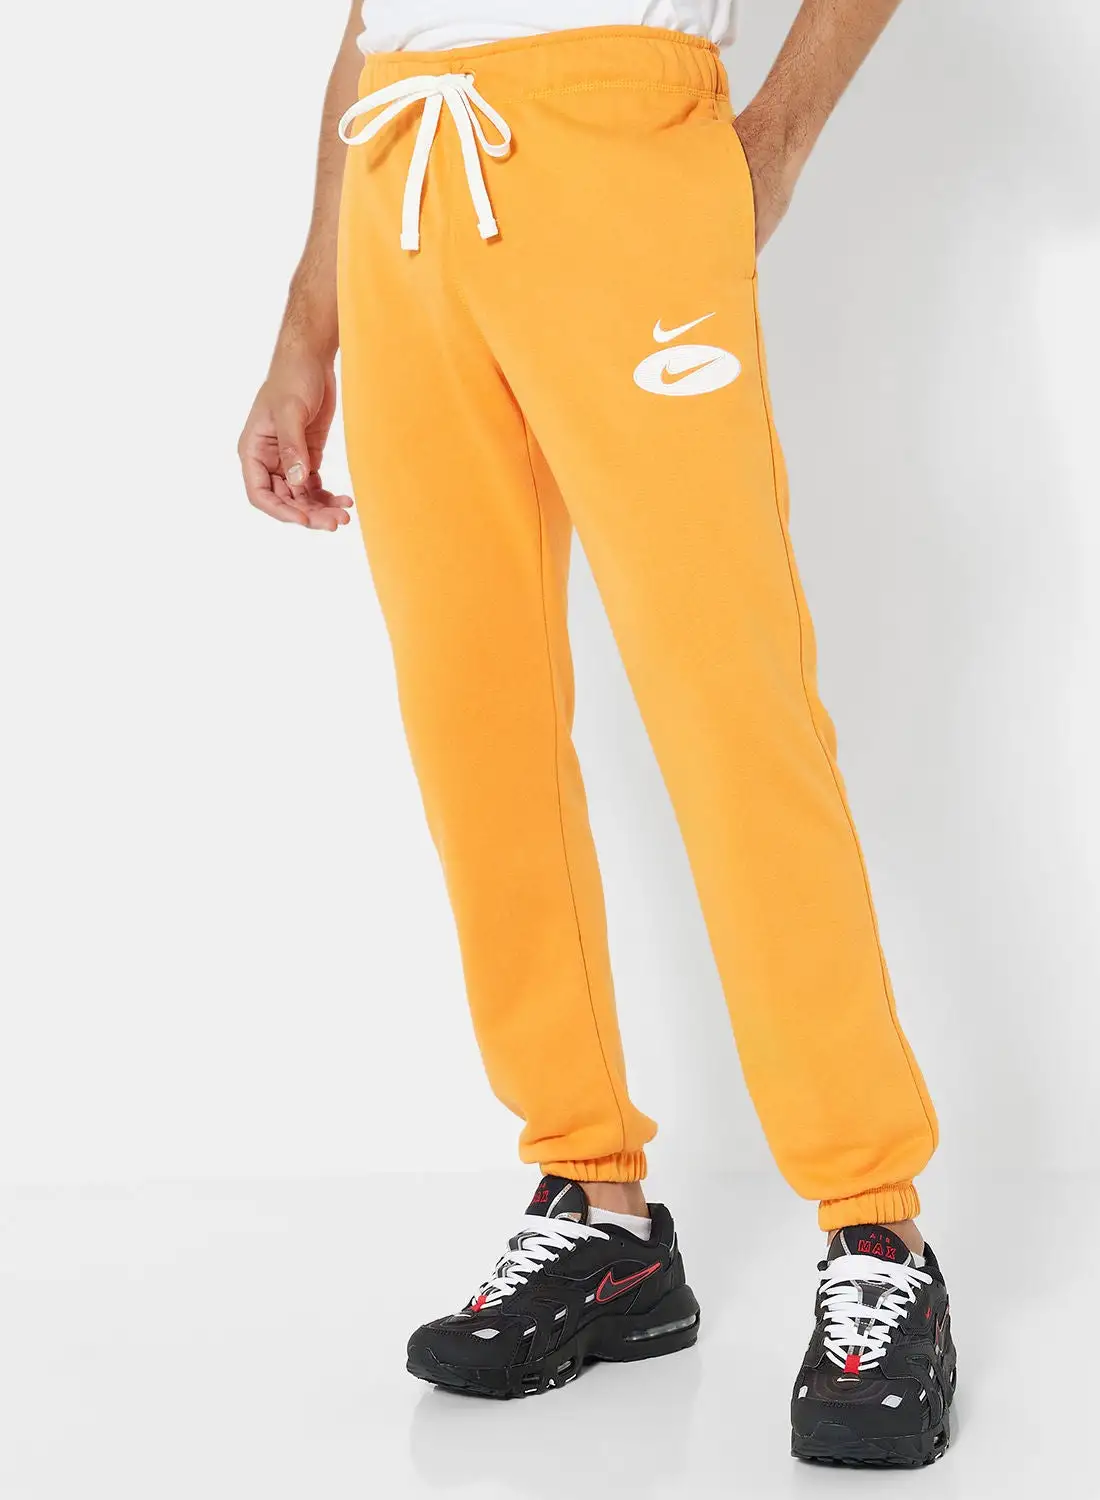 Nike Sportswear Swoosh League French Terry Sweatpants